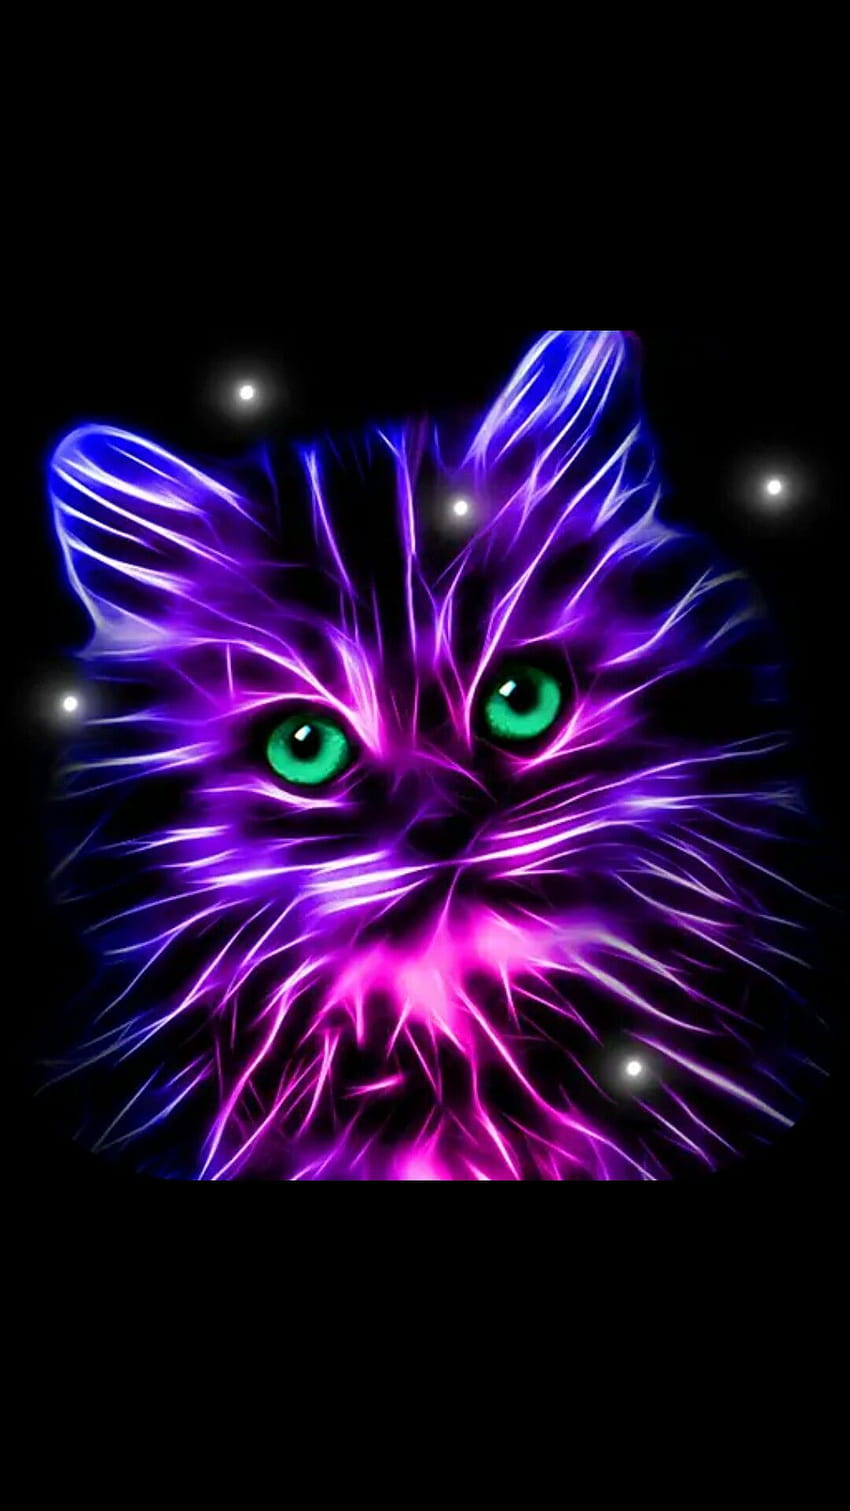 30+] Neon Cat Wallpapers - WallpaperSafari